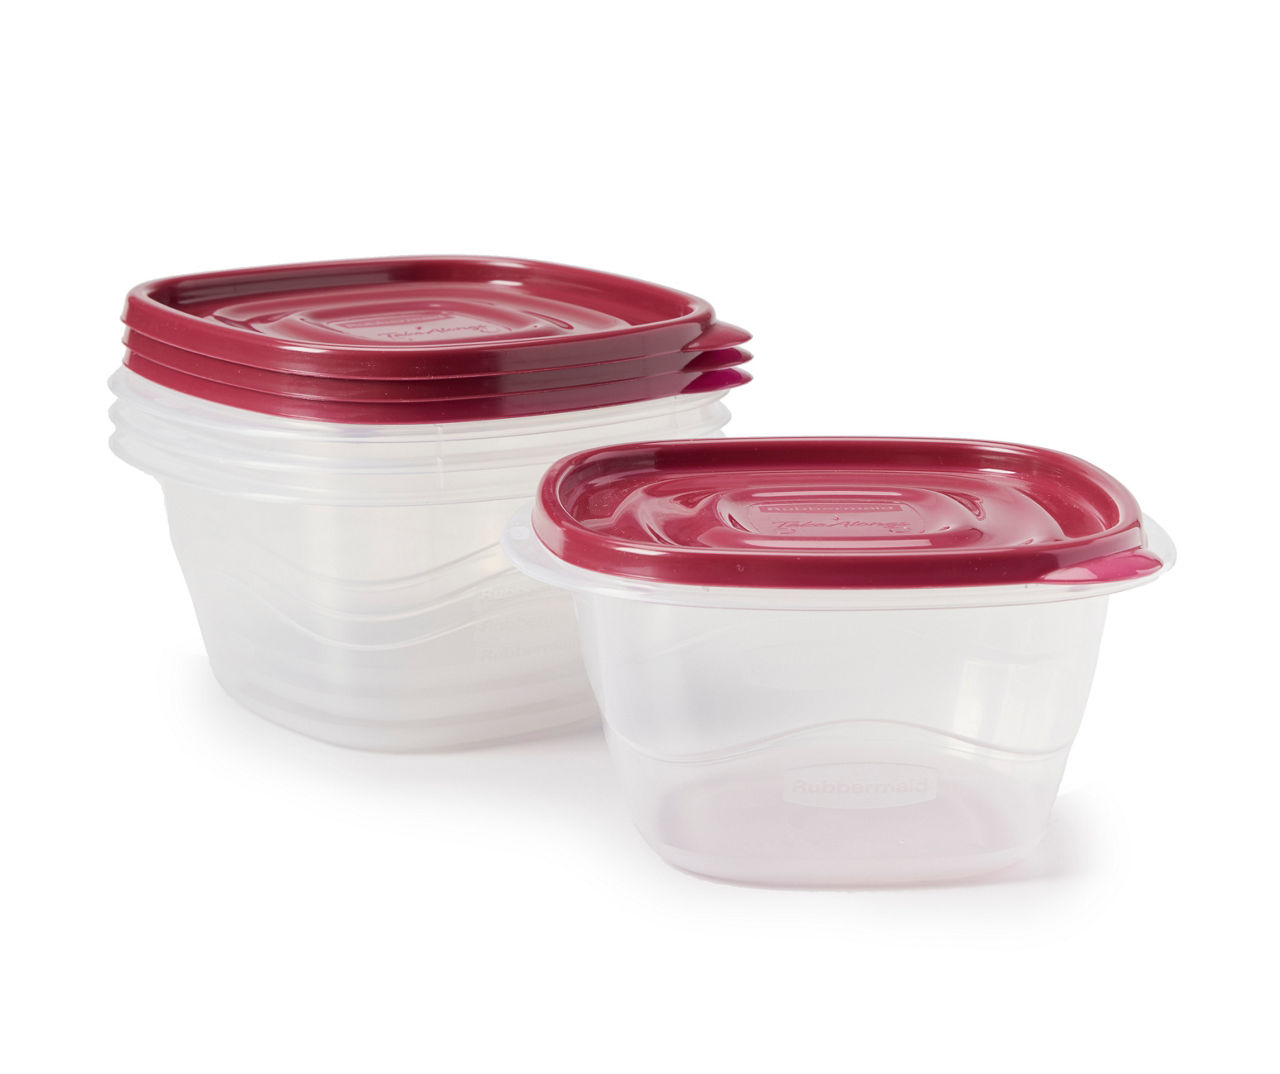 Rubbermaid EasyFindLid, 14 Cup, Square Plastic Food Storage